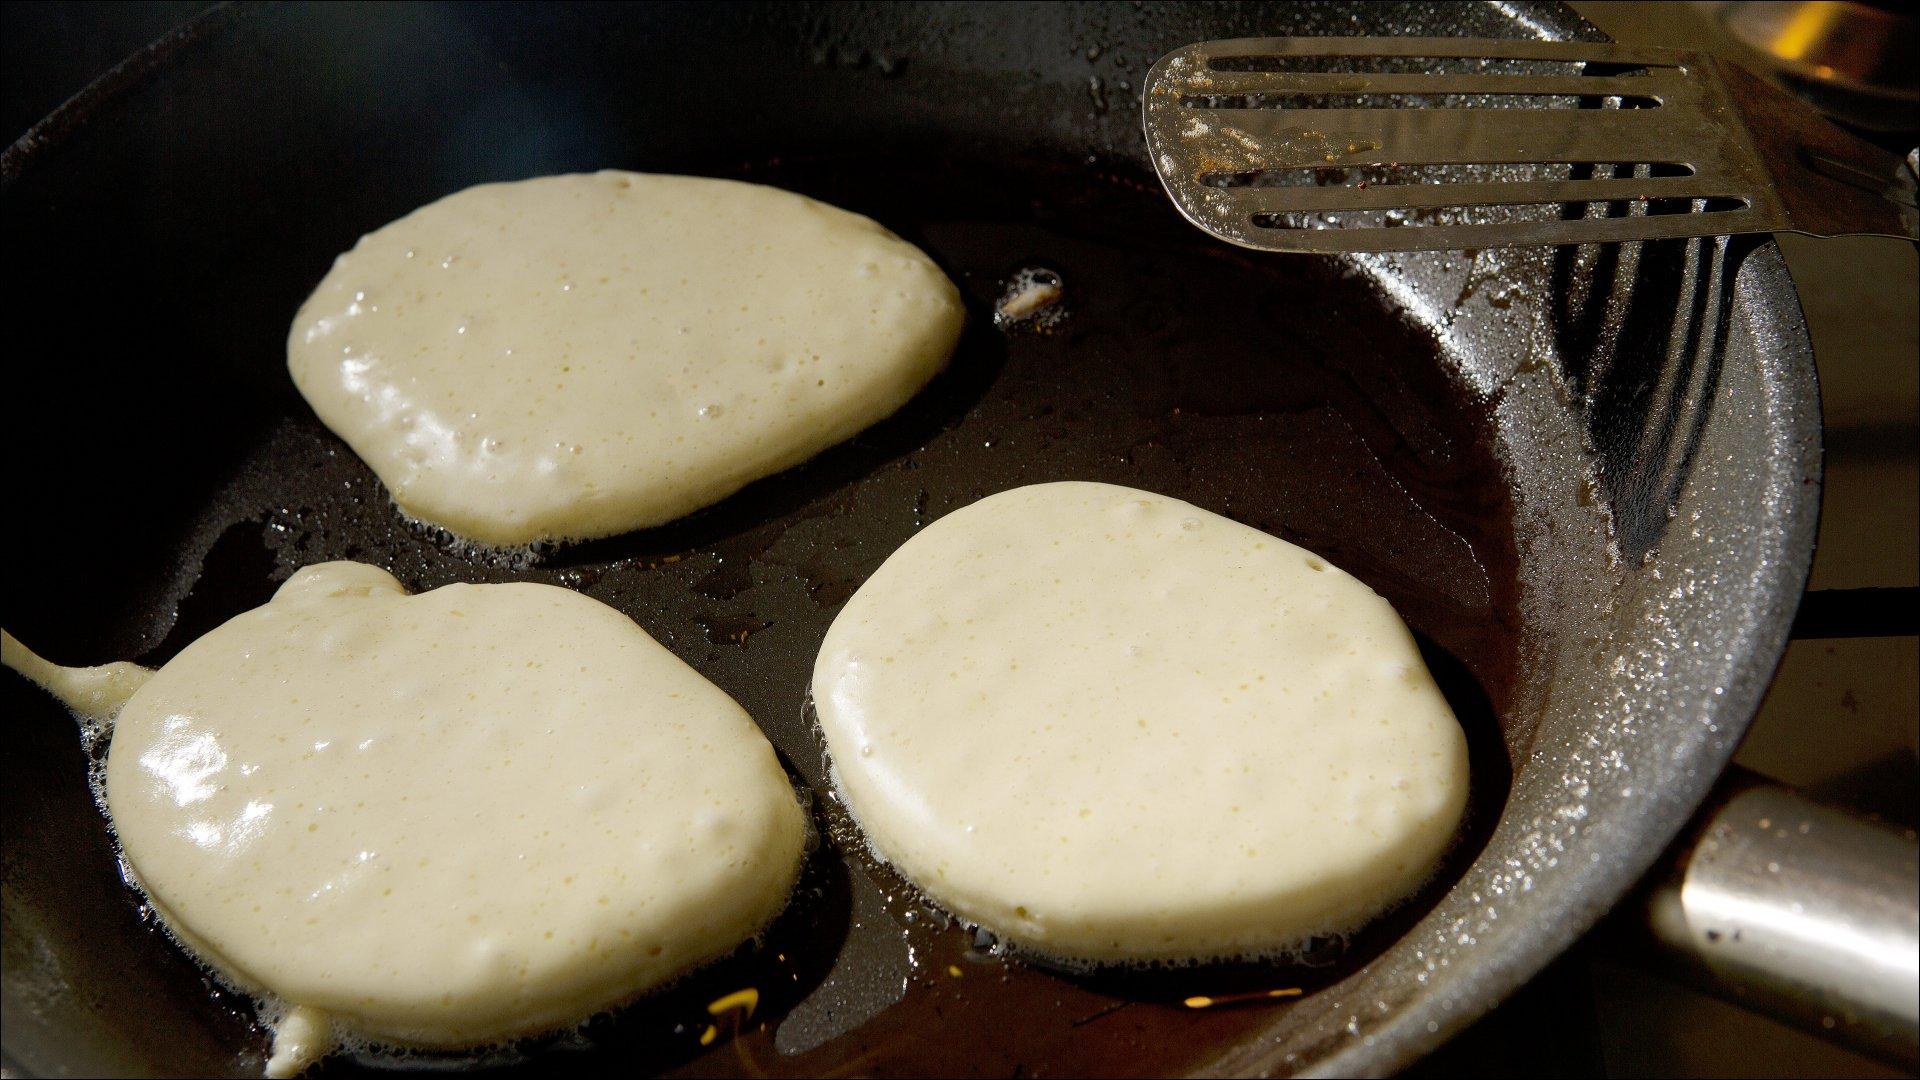 Smelt litt smør i stekepannen, og stek pannekakene på middels varme. De skal være omtrent 15 cm i diameter. Når kakene sveller opp og bobler litt på overflaten, kan du vende dem. Avkjøl pannekakene på rist og server med ønsket tilbehør.